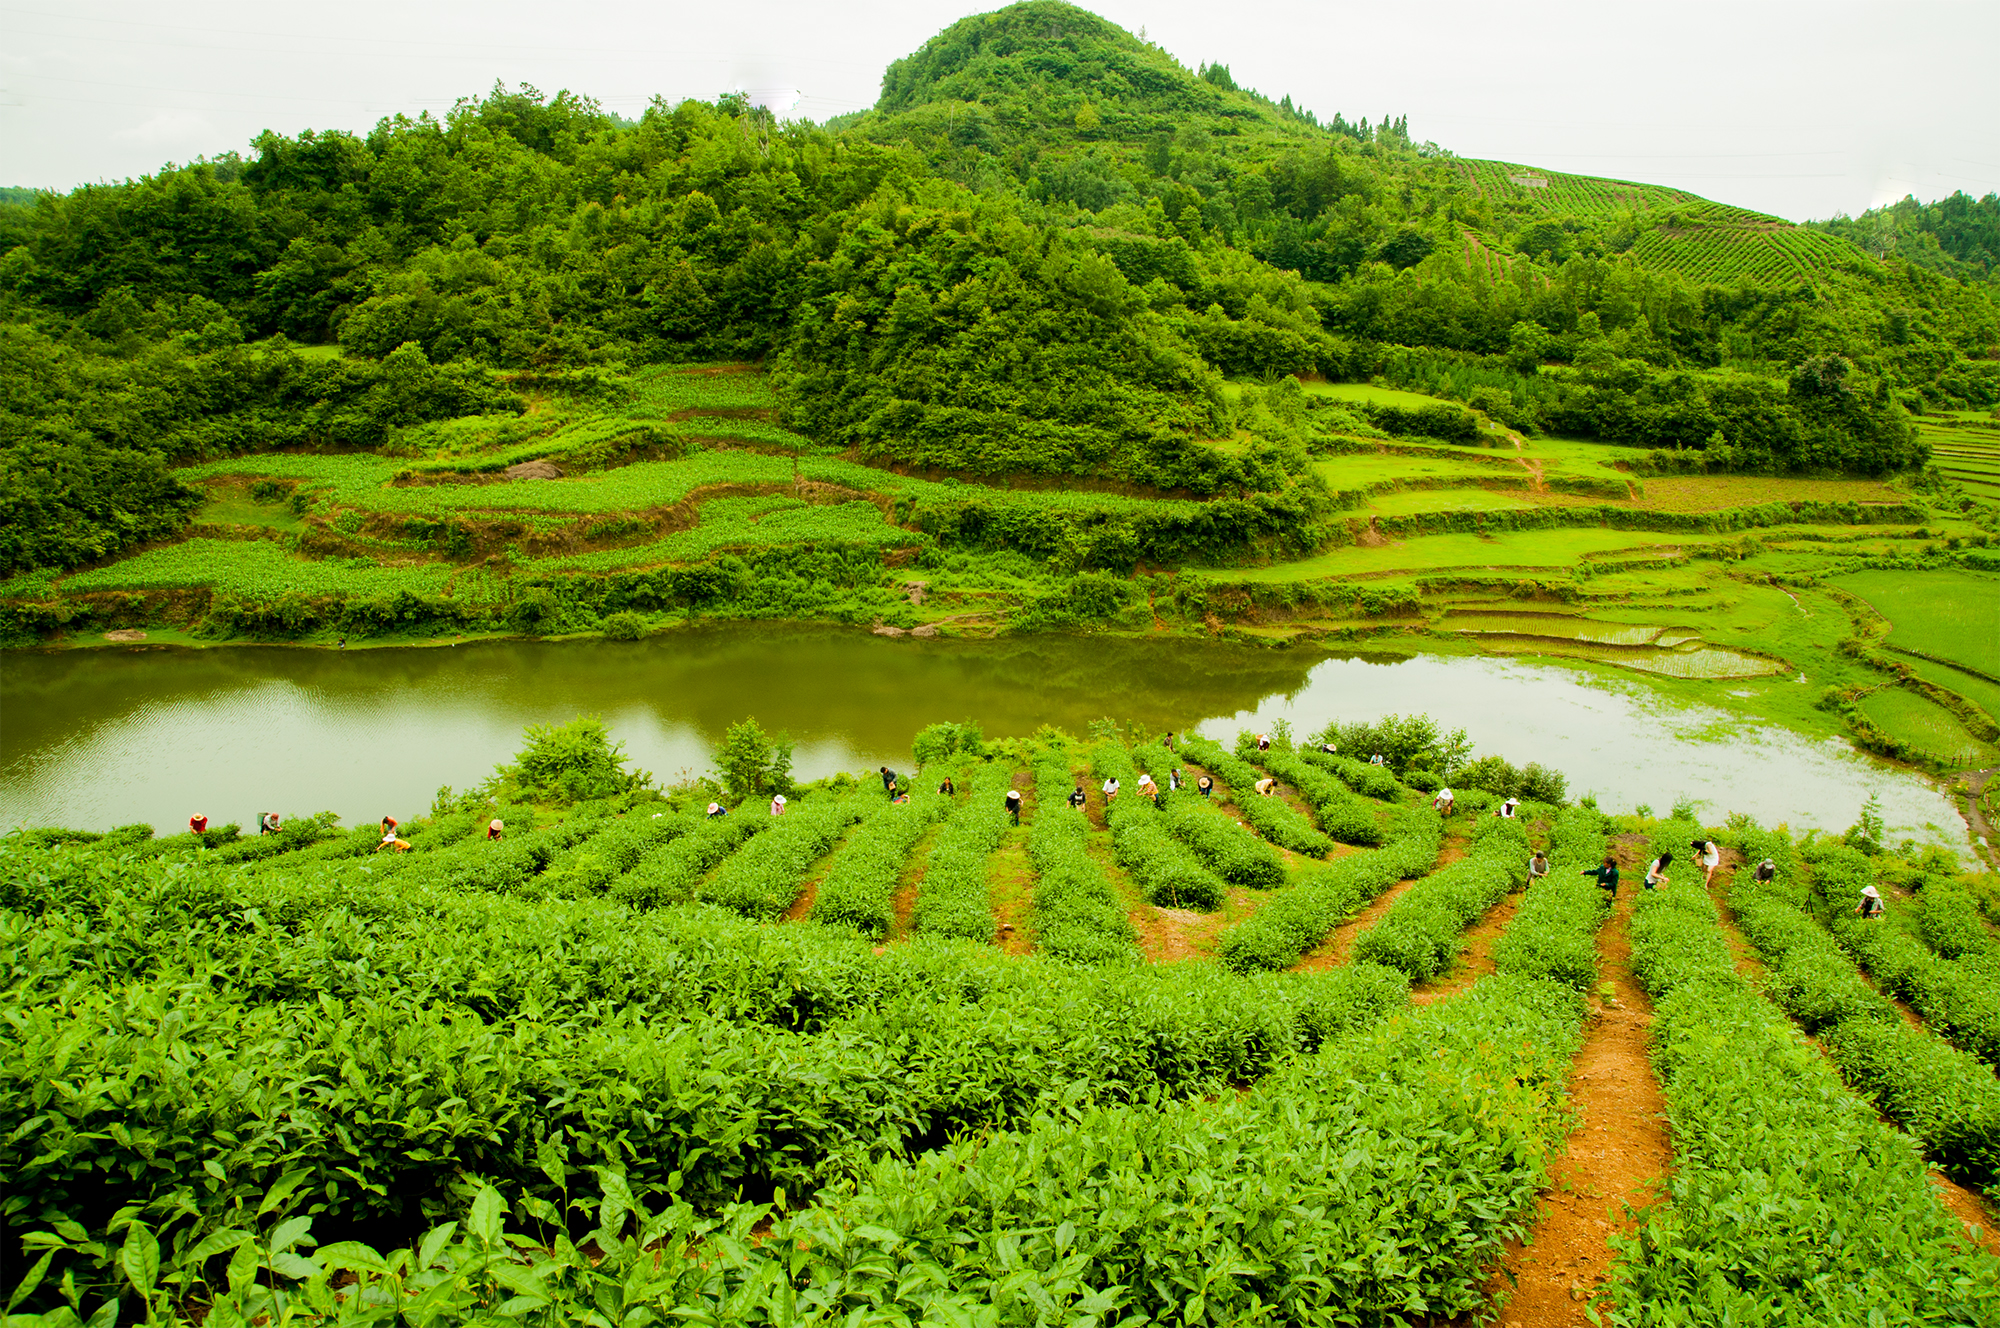 最美茶园评选贵州渔樵耕读生态农业发展有限公司茶园